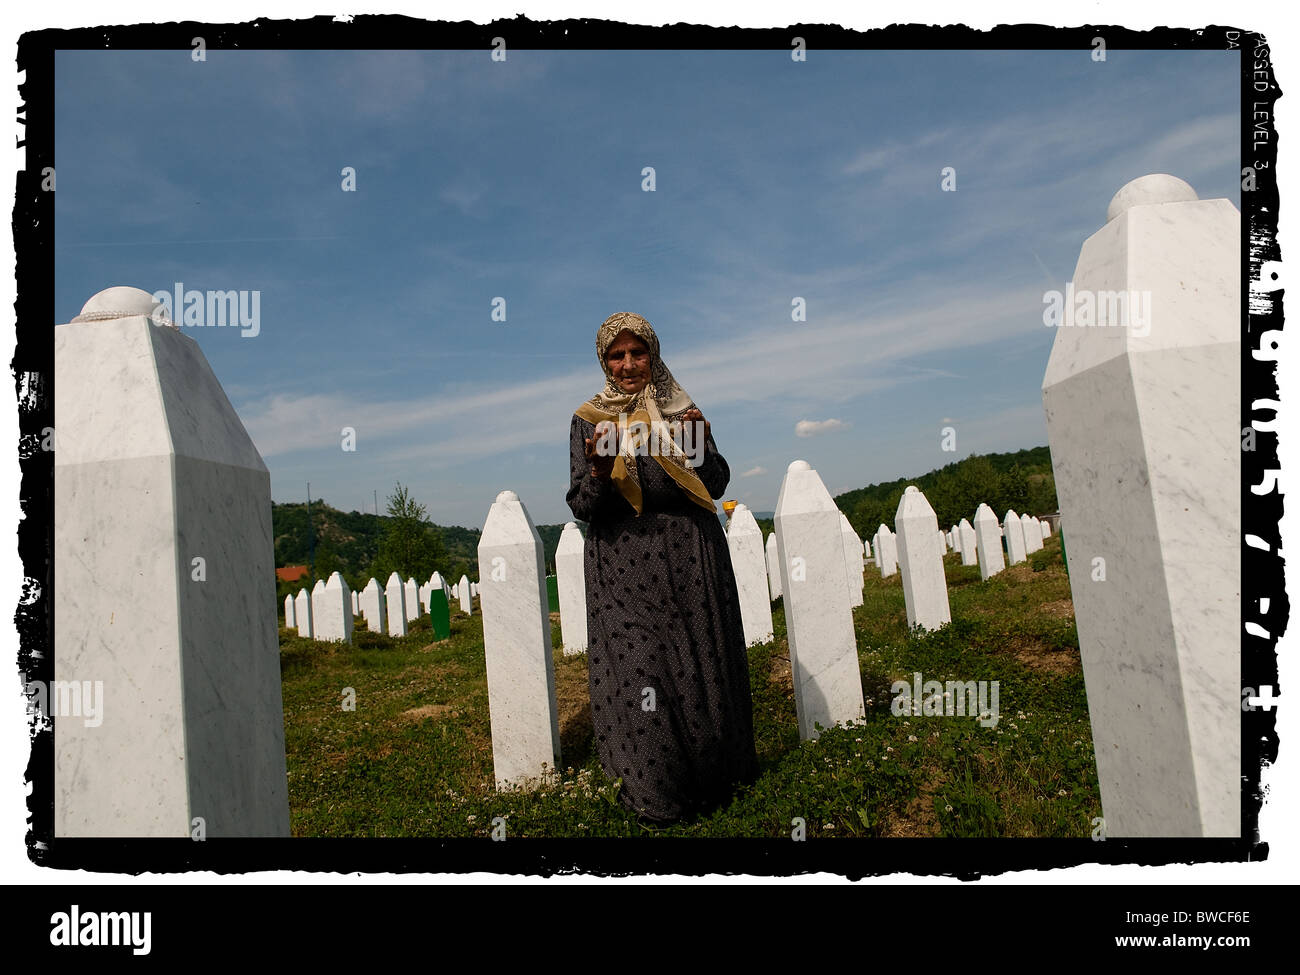 Eine bosnische Muslimin betet zwischen den Gräbern ihrer Verwandten, die alle Opfer des Genozids von Srebrenica sind, auf dem Friedhof in Potocari bei Srebrenica, Bosnien und Herzegowina. Mehr als 8,000 bosnisch-muslimische Männer und Jungen wurden getötet, nachdem die serbische Armee am 10-11. Juli 1995 trotz der Anwesenheit von UN-Friedenstruppen Srebrenica, ein ausgewiesenes UN-Sicherheitsgebiet, angegriffen hatte. Stockfoto